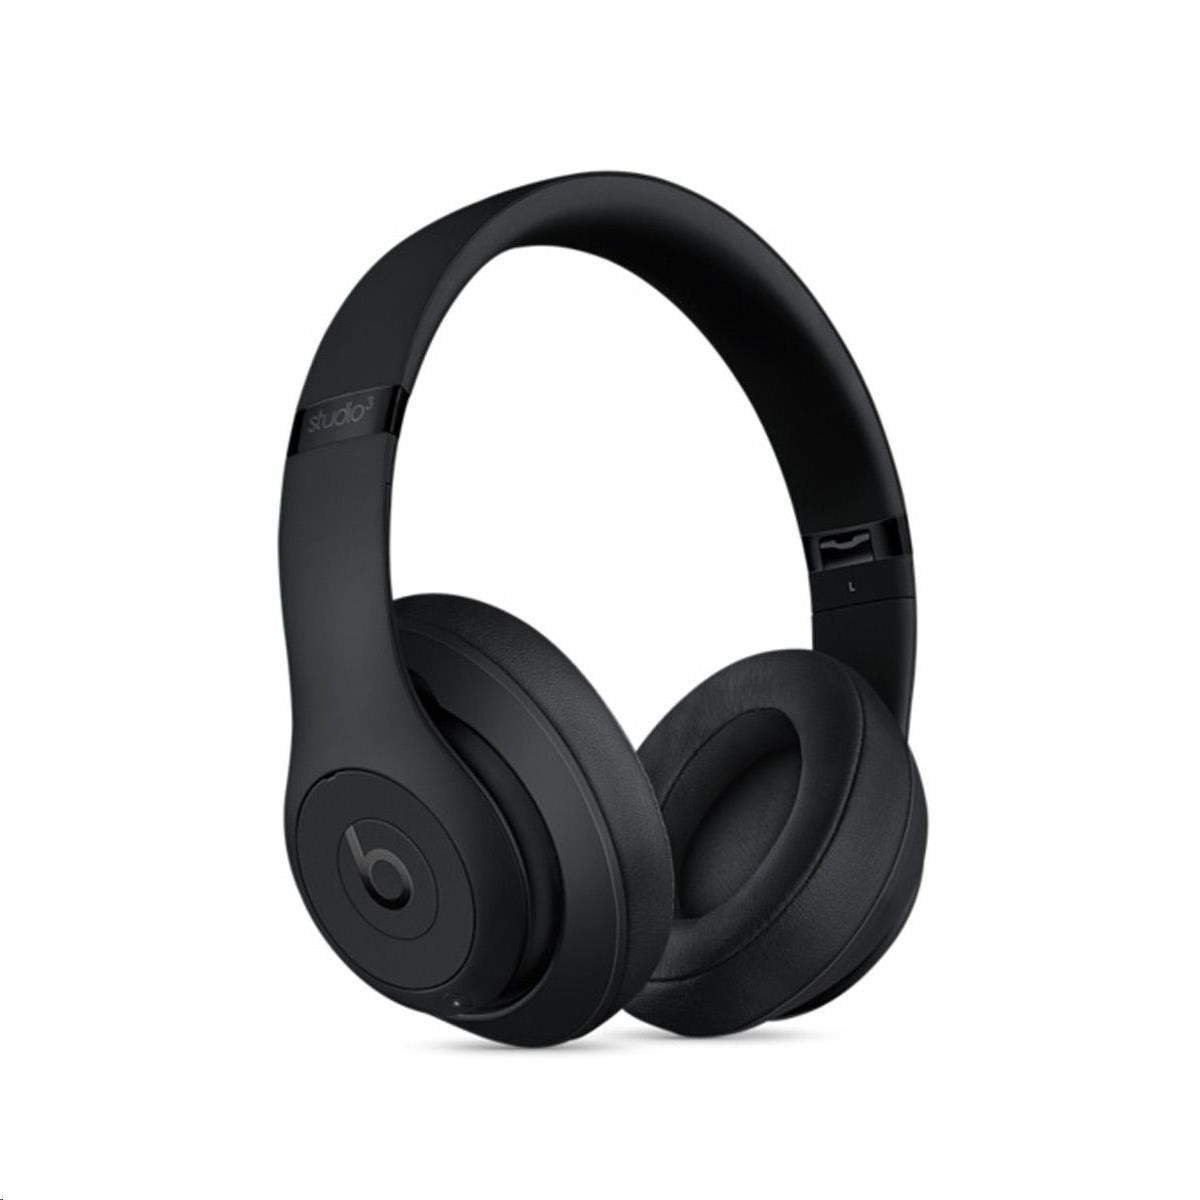 Beats Studio3 Wireless Over-Ear Headphones - Matte Black6 